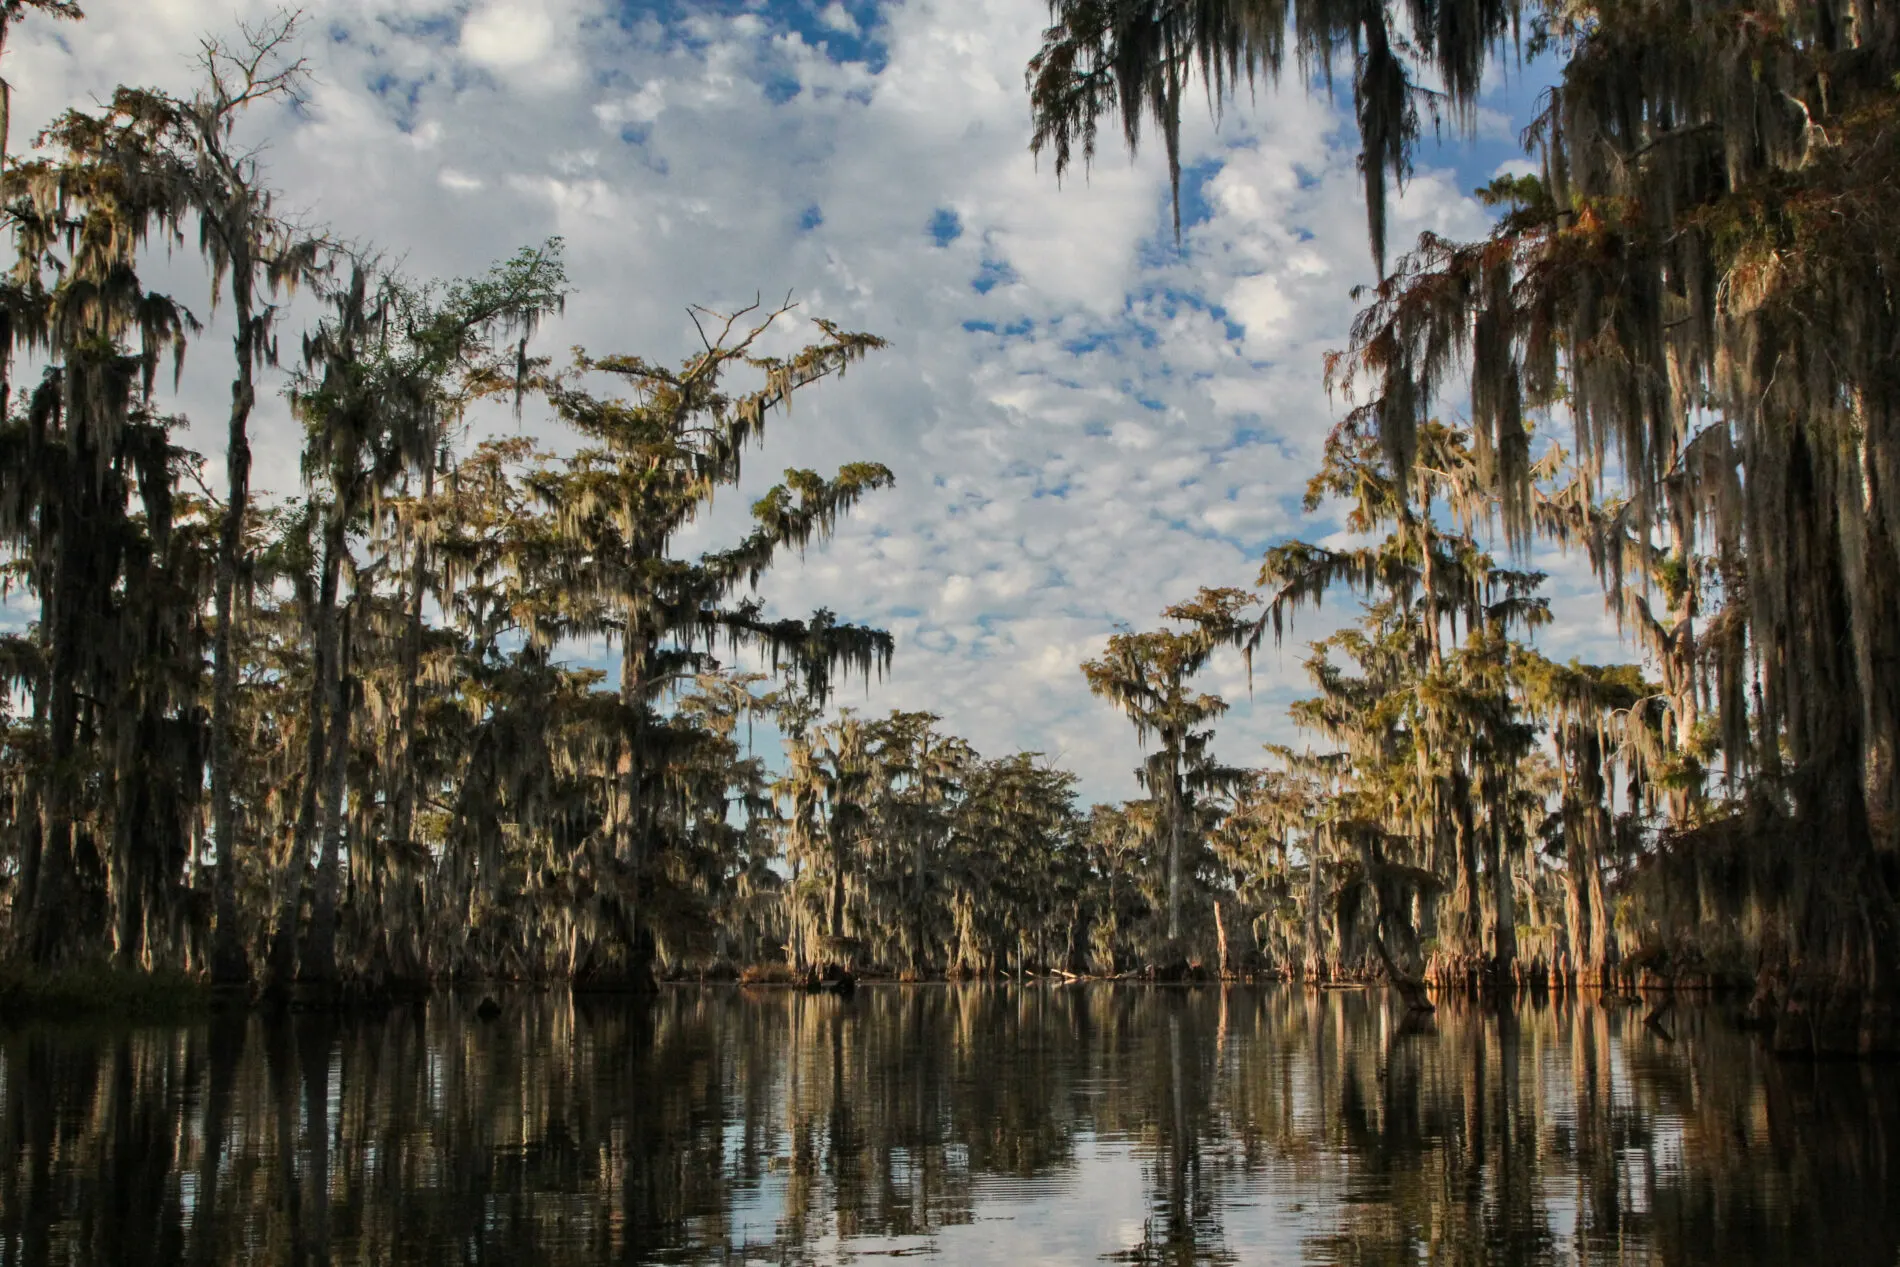 Lake Martin's mossy trees are indicative of a true Louisiana swamp.